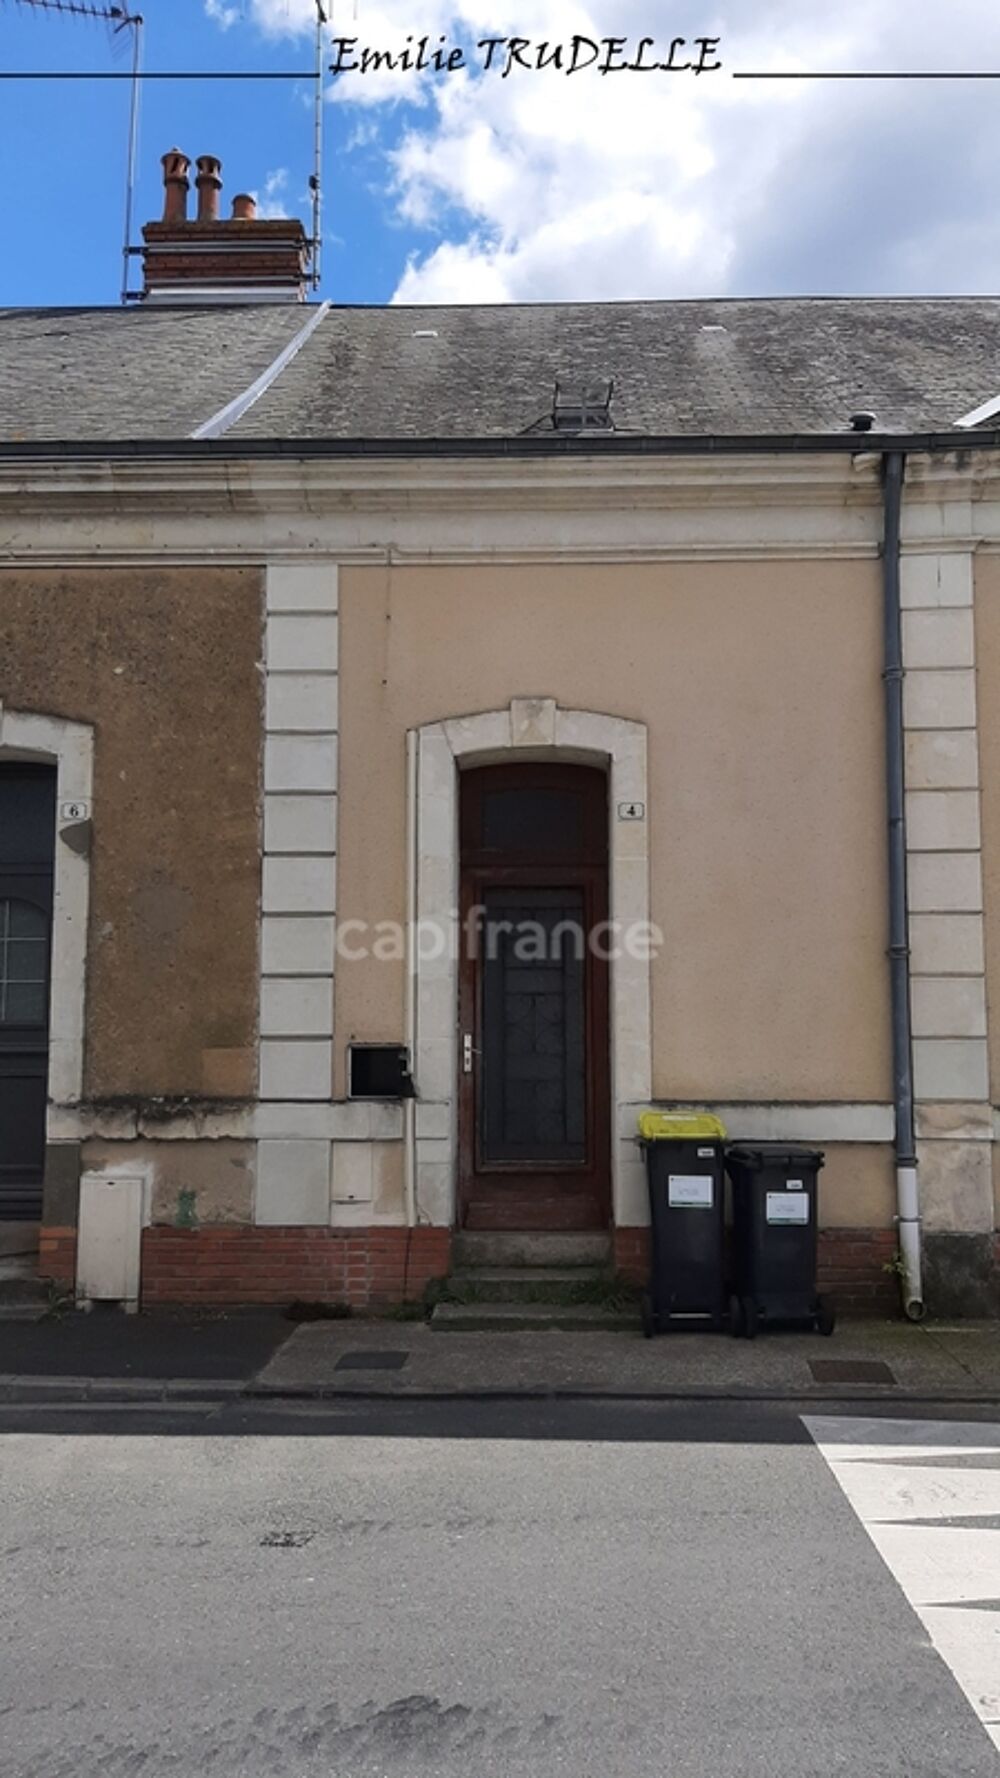 Vente Maison Dpt Sarthe (72),  vendre LUCHE PRINGE maison P3 idal investissement locatif 64 m sur parcelle de 195 m Luche pringe